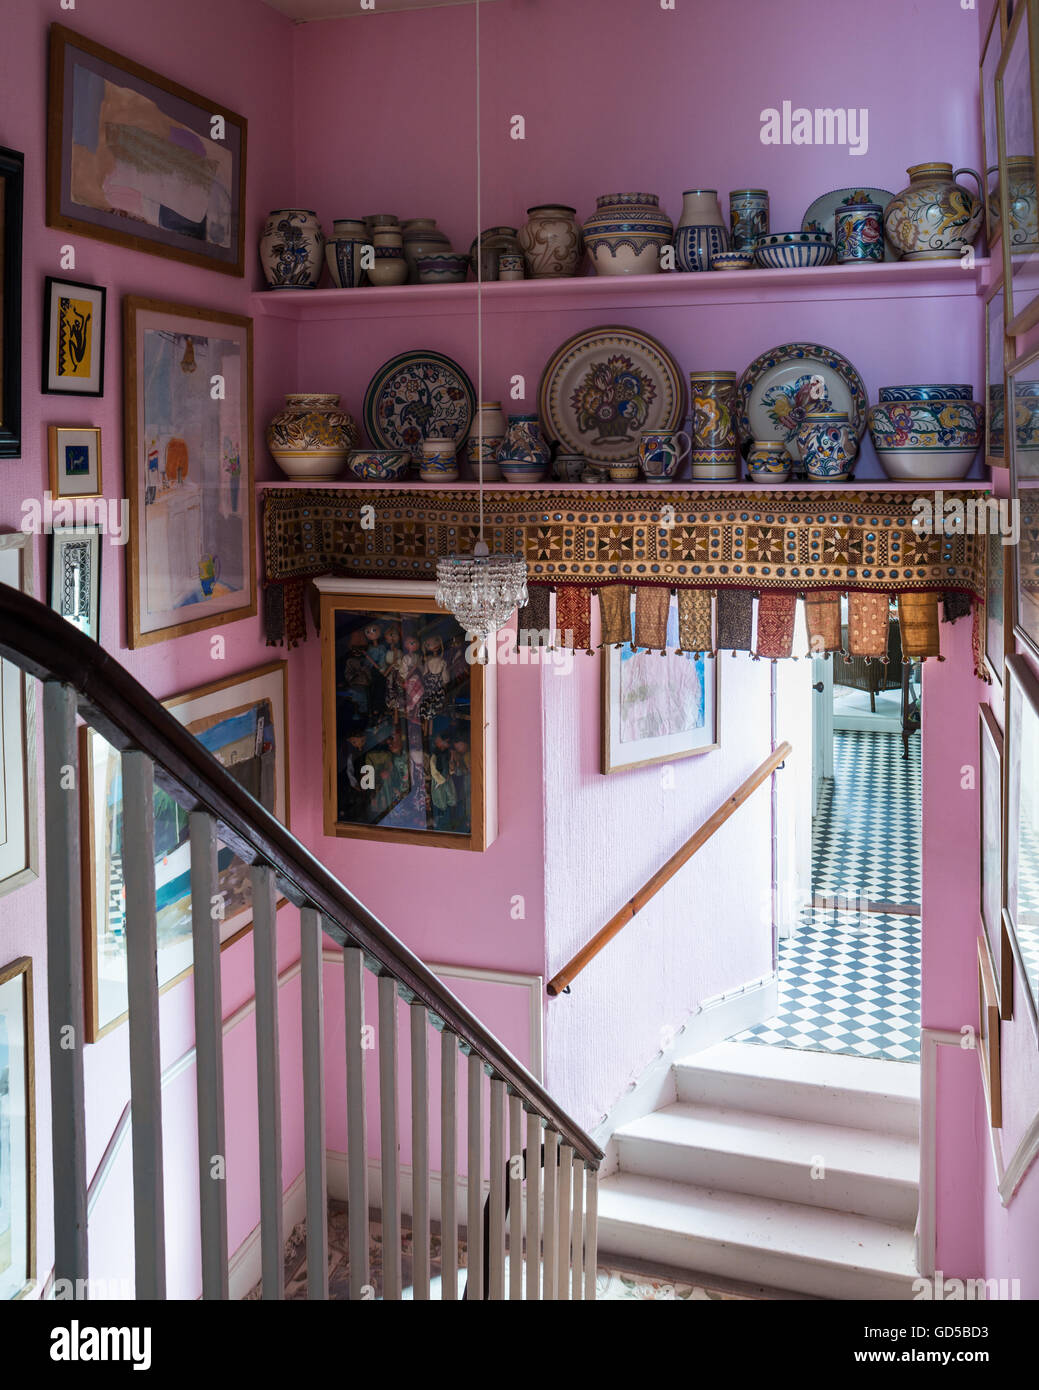 Collezione di ceramiche di Poole sui ripiani in rosa scale con assortimento di opere d'arte sulle pareti Foto Stock